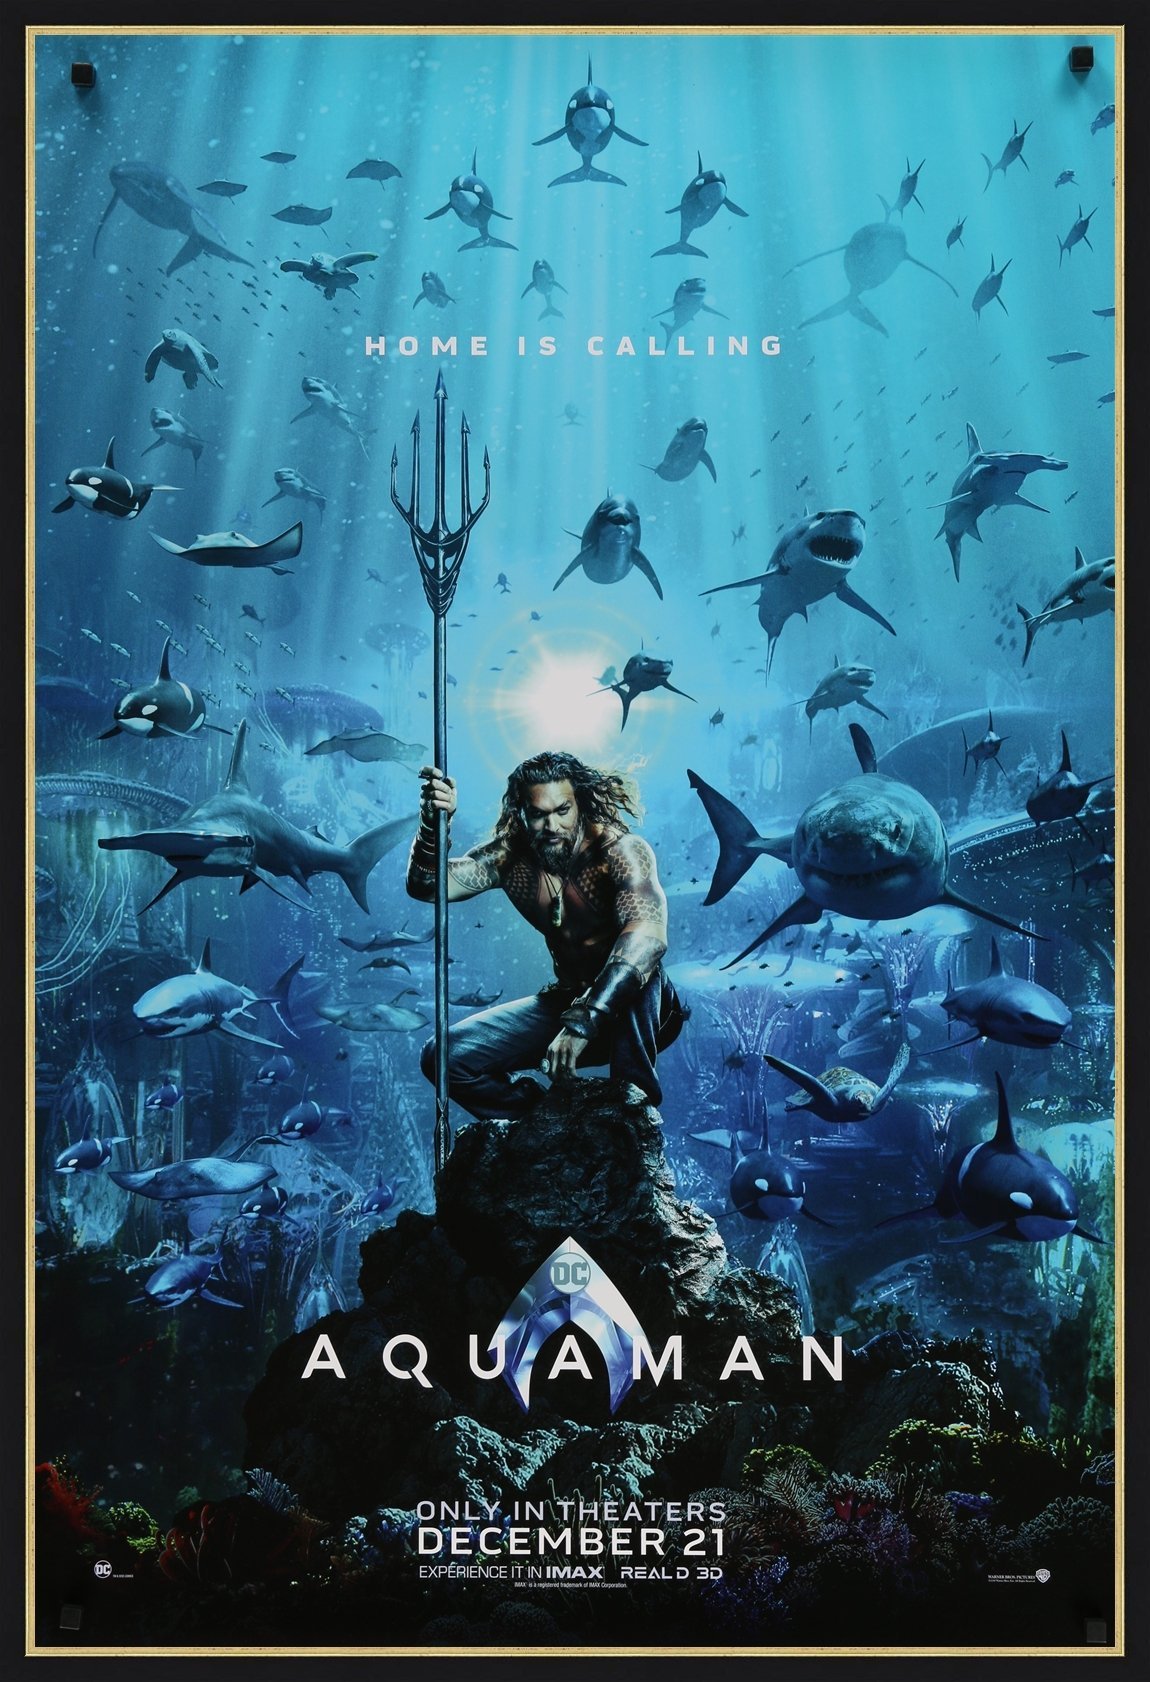 An original movie poster for the film Aquaman